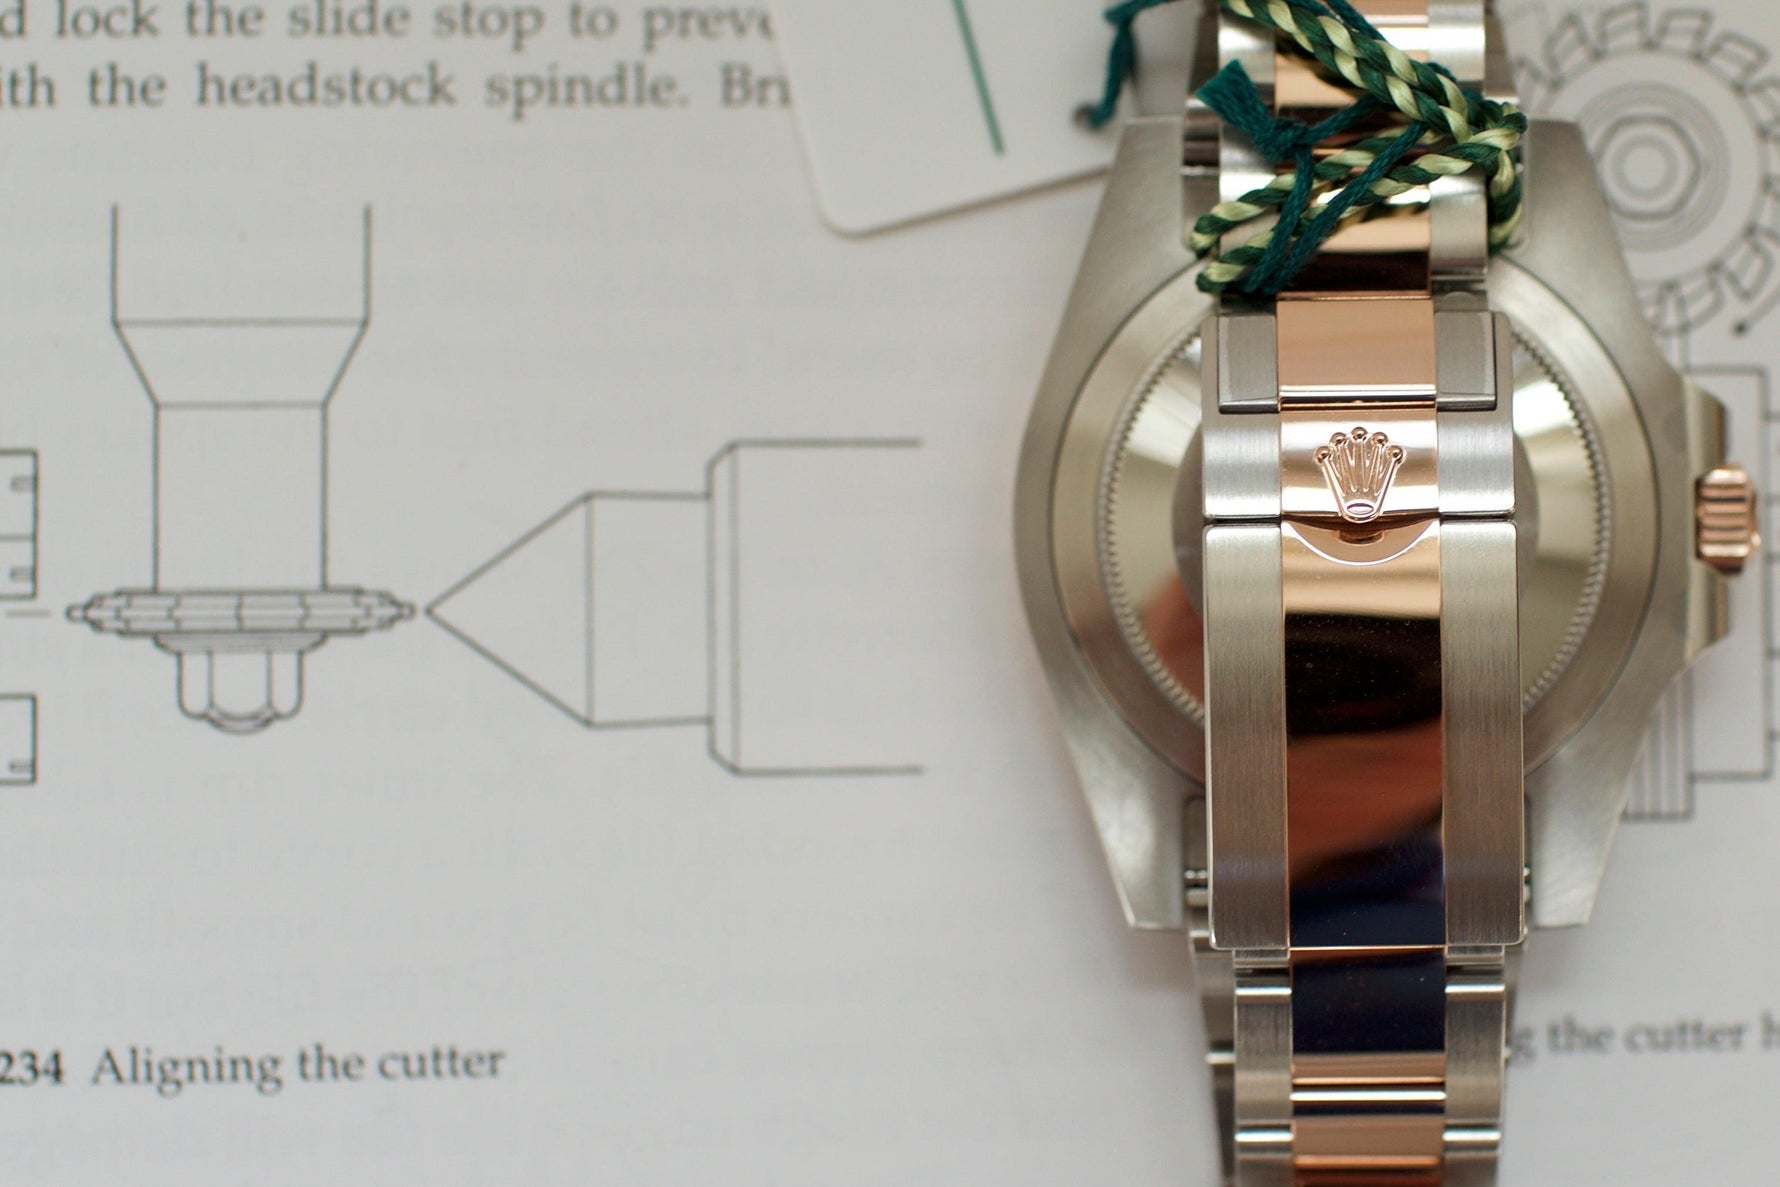 SOLDOUT: Rolex GMT II Root Beer - WearingTime Luxury Watches